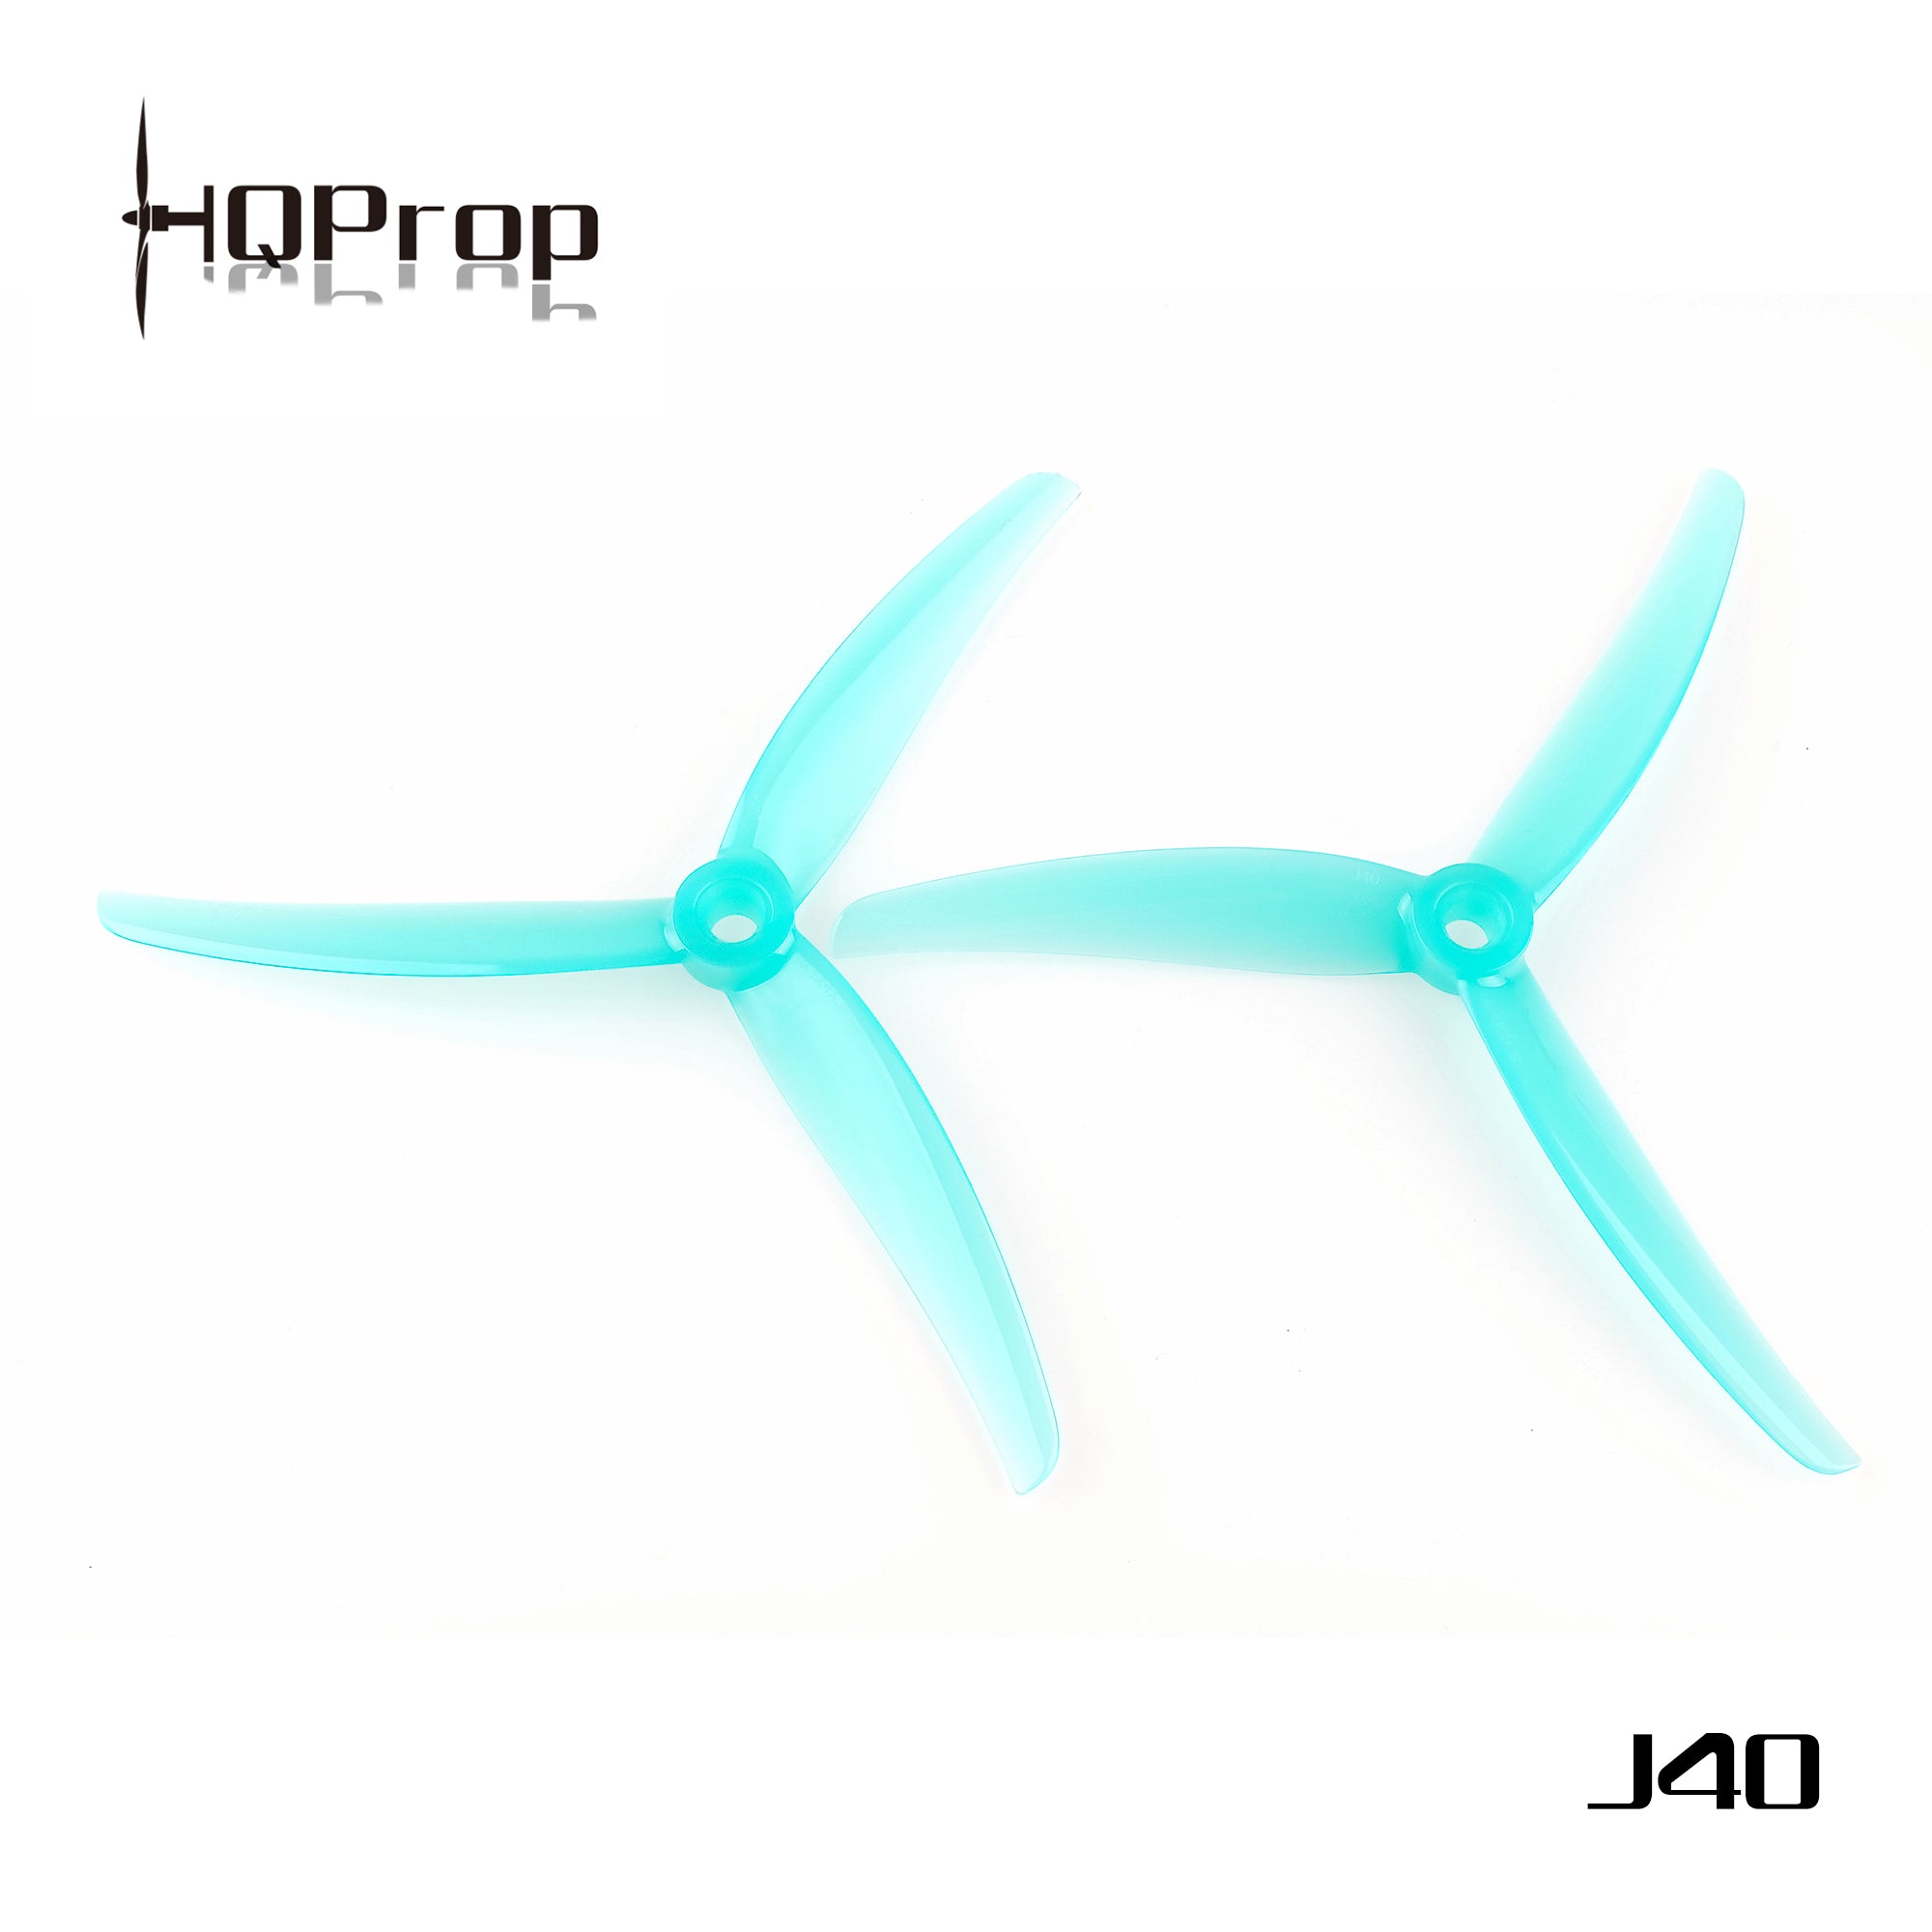 HQProp J40 5.1X4X3 Juicy Propellers (2CW+2CCW)